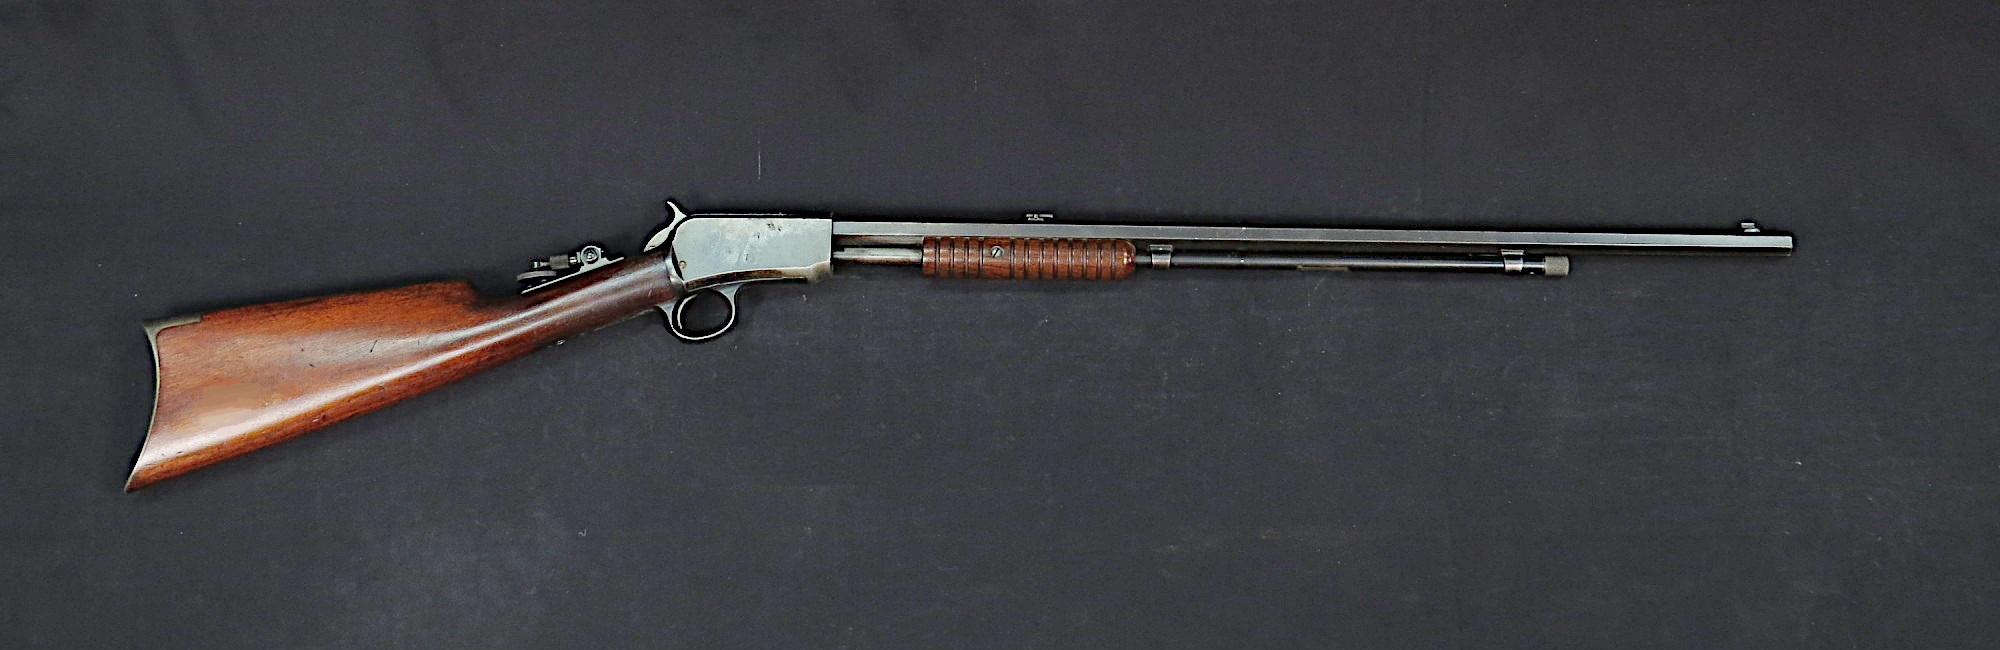 Winchester_Model_1890_Slide_Action_Rifle-NMAH-AHB2015q116730.jpg